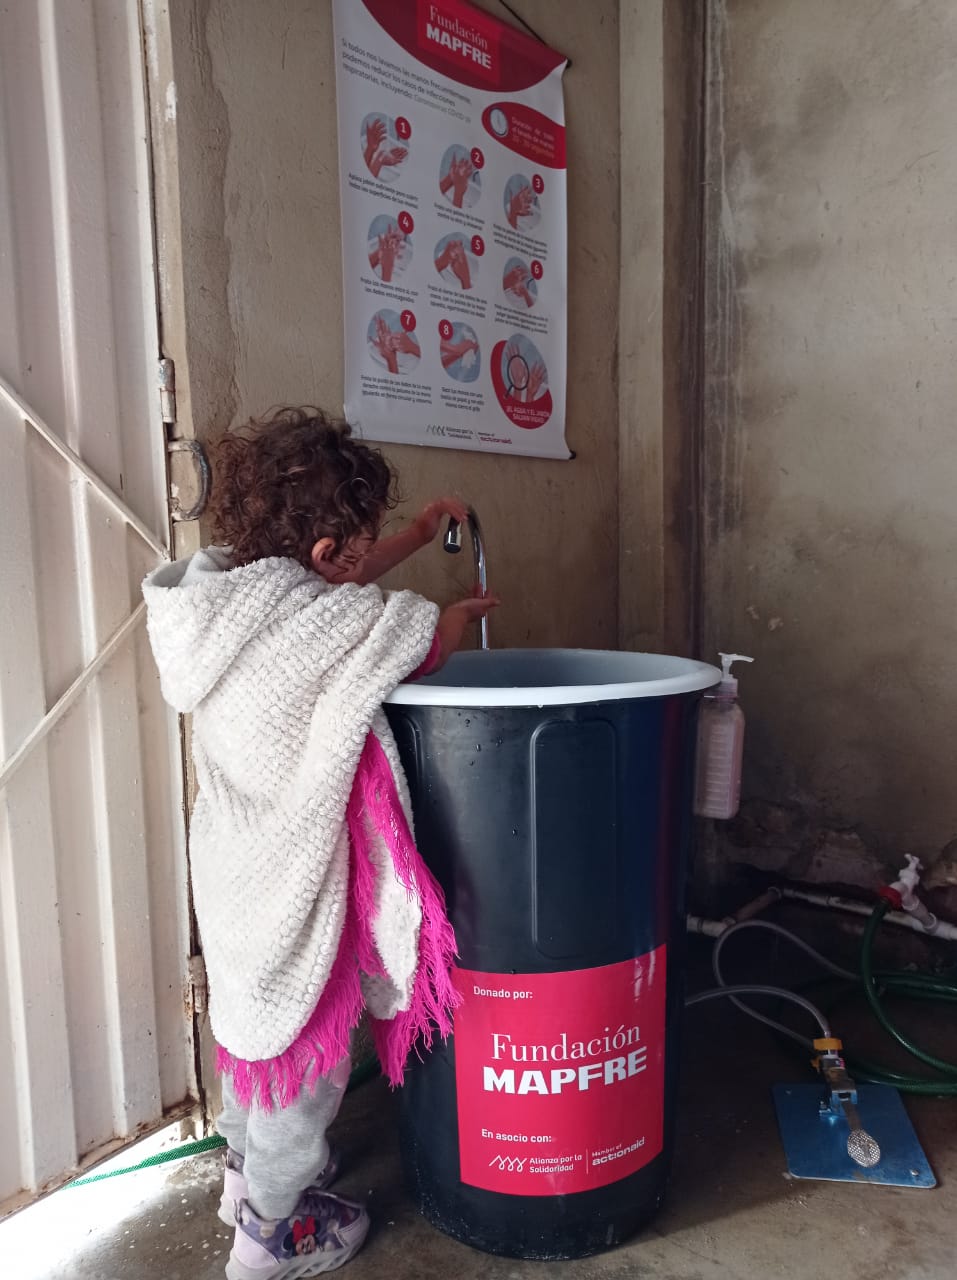 Fundación mapfre anuncia importante donación económica para apoyar a comunidades vulnerables en Colombia